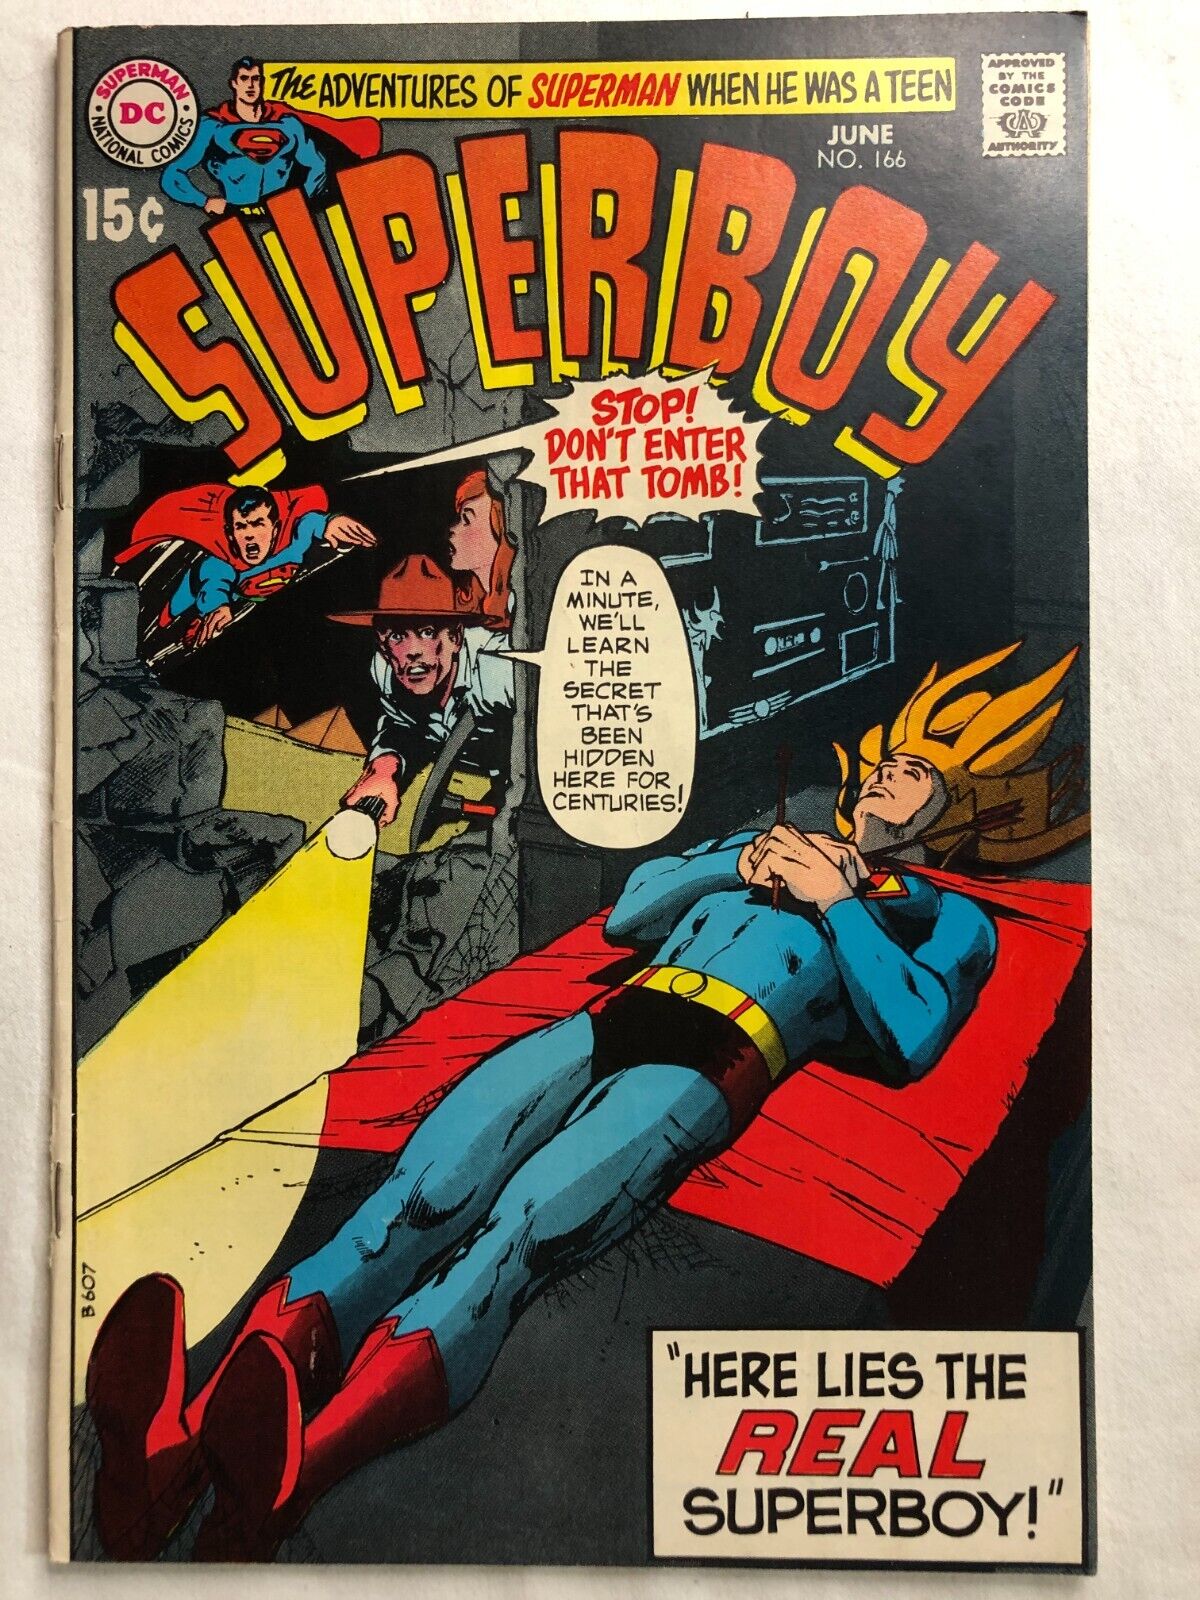 SUPERBOY #166 June 1970 Vintage Silver Age DC Comics Excellent Condition